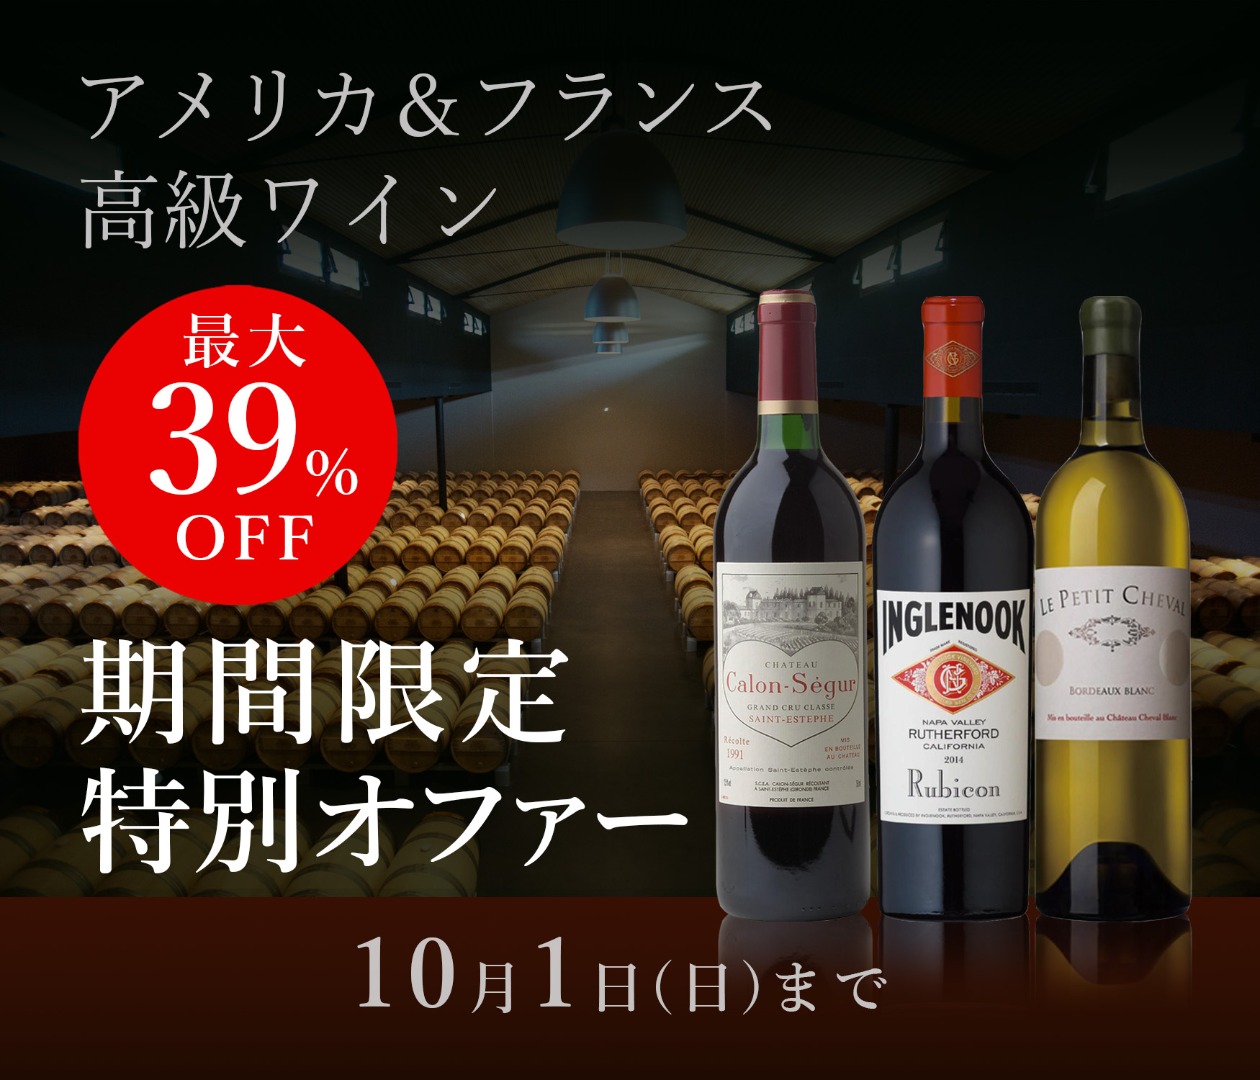 【最大39%off】アメリカ&フランス高級ワイン 期間限定特別オファー